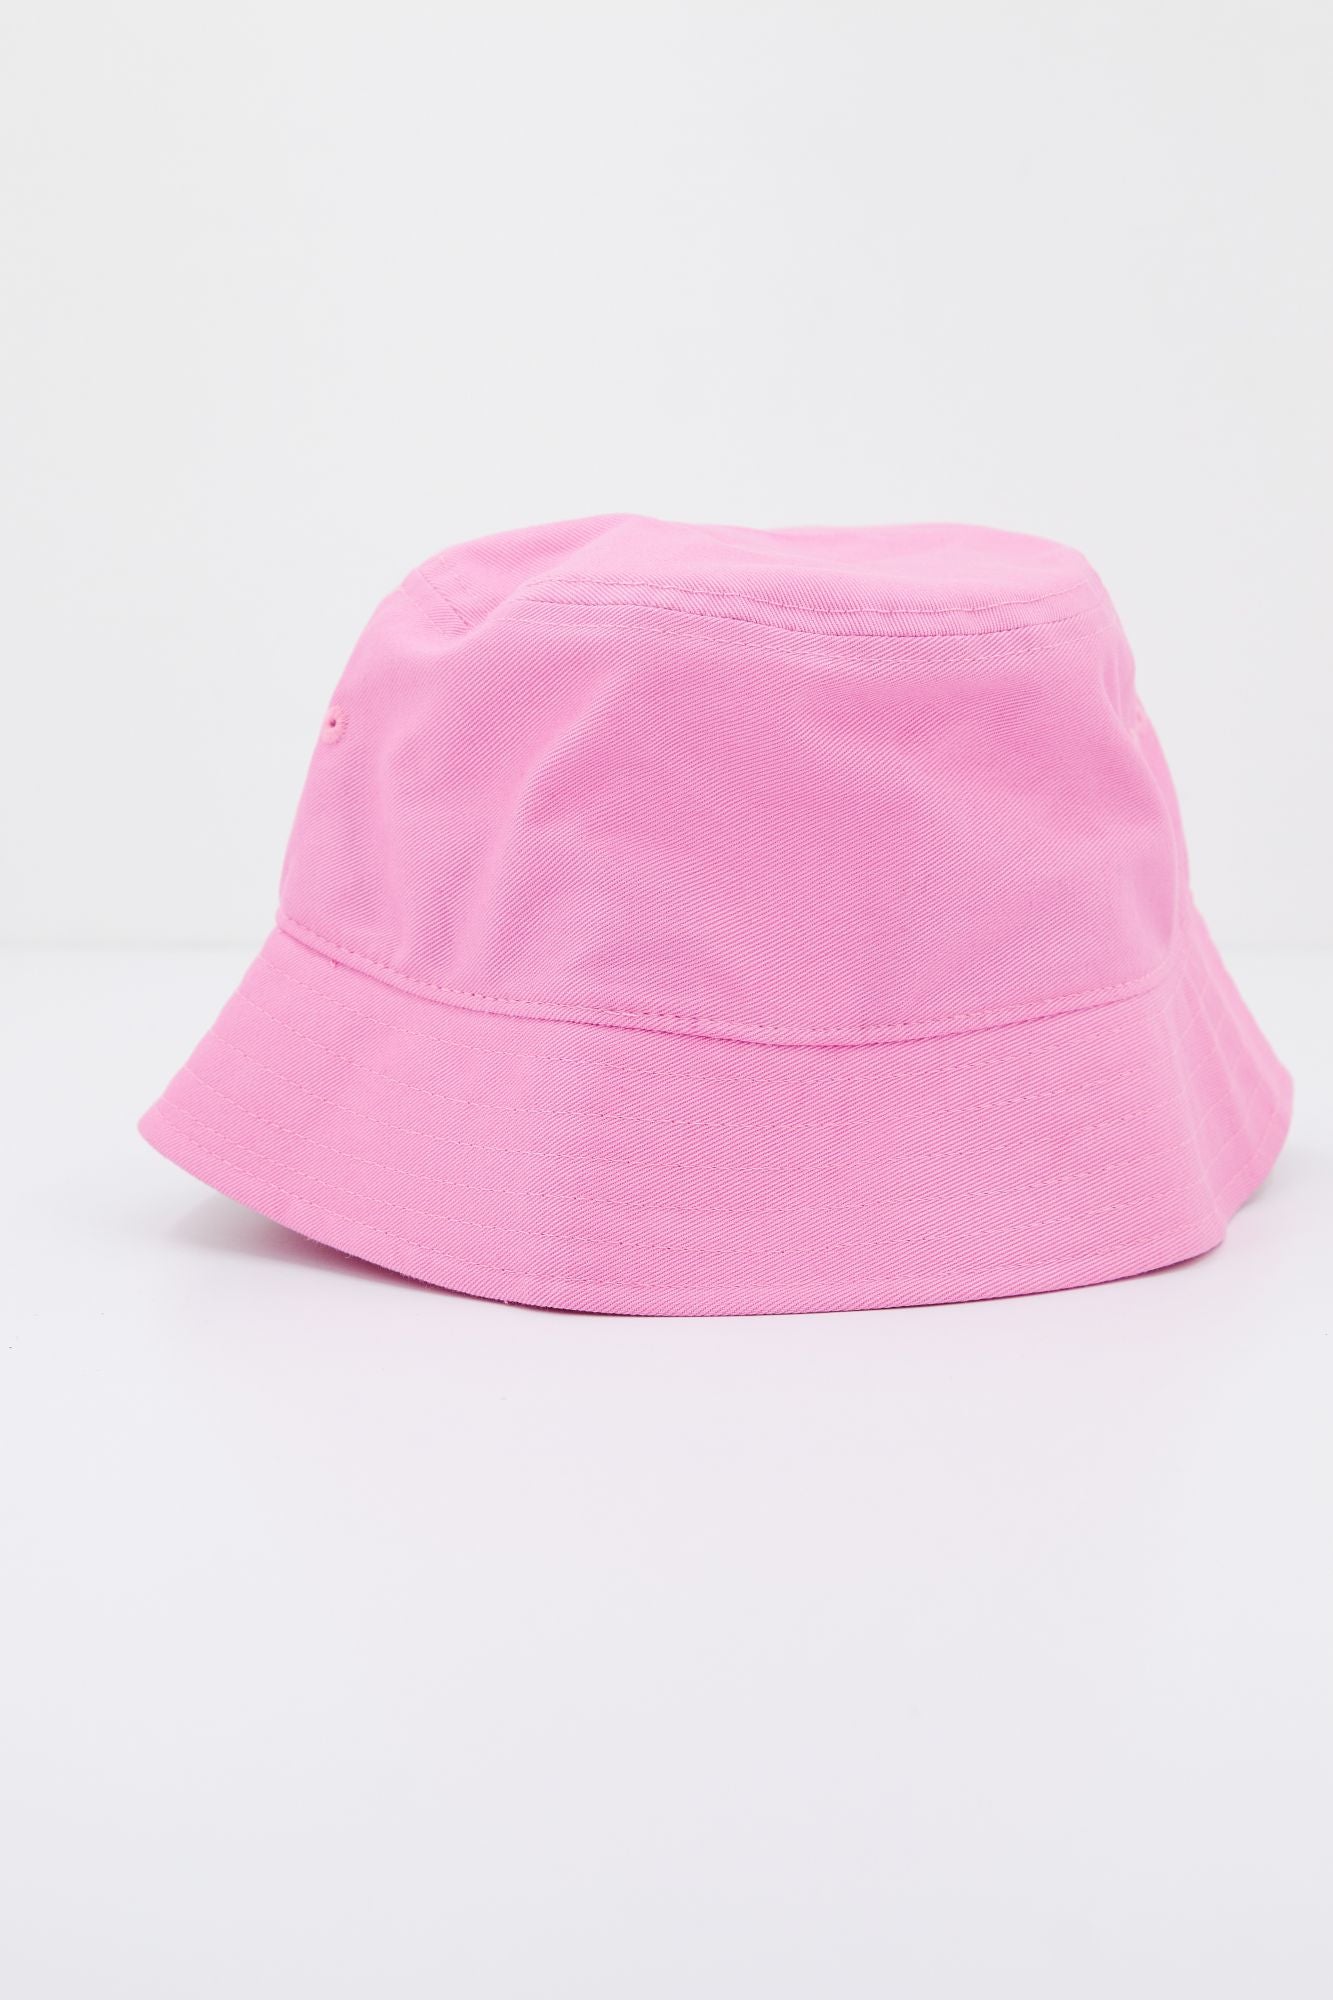 VANS HANKLEY BUCKET HAT en color ROSA (3)